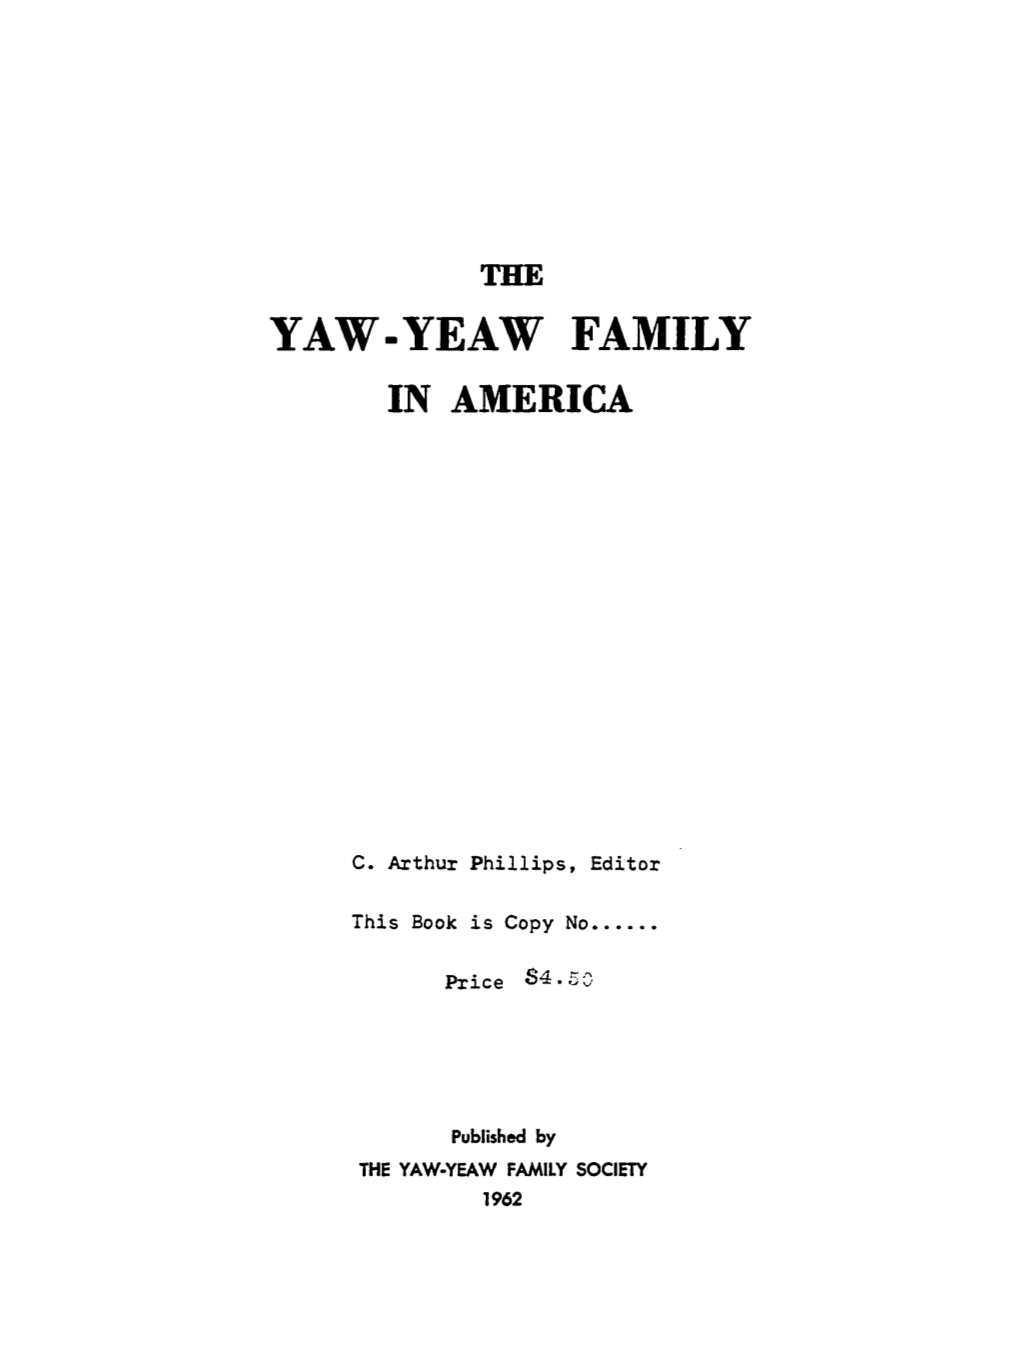 Yaw-Yeaw Family in America